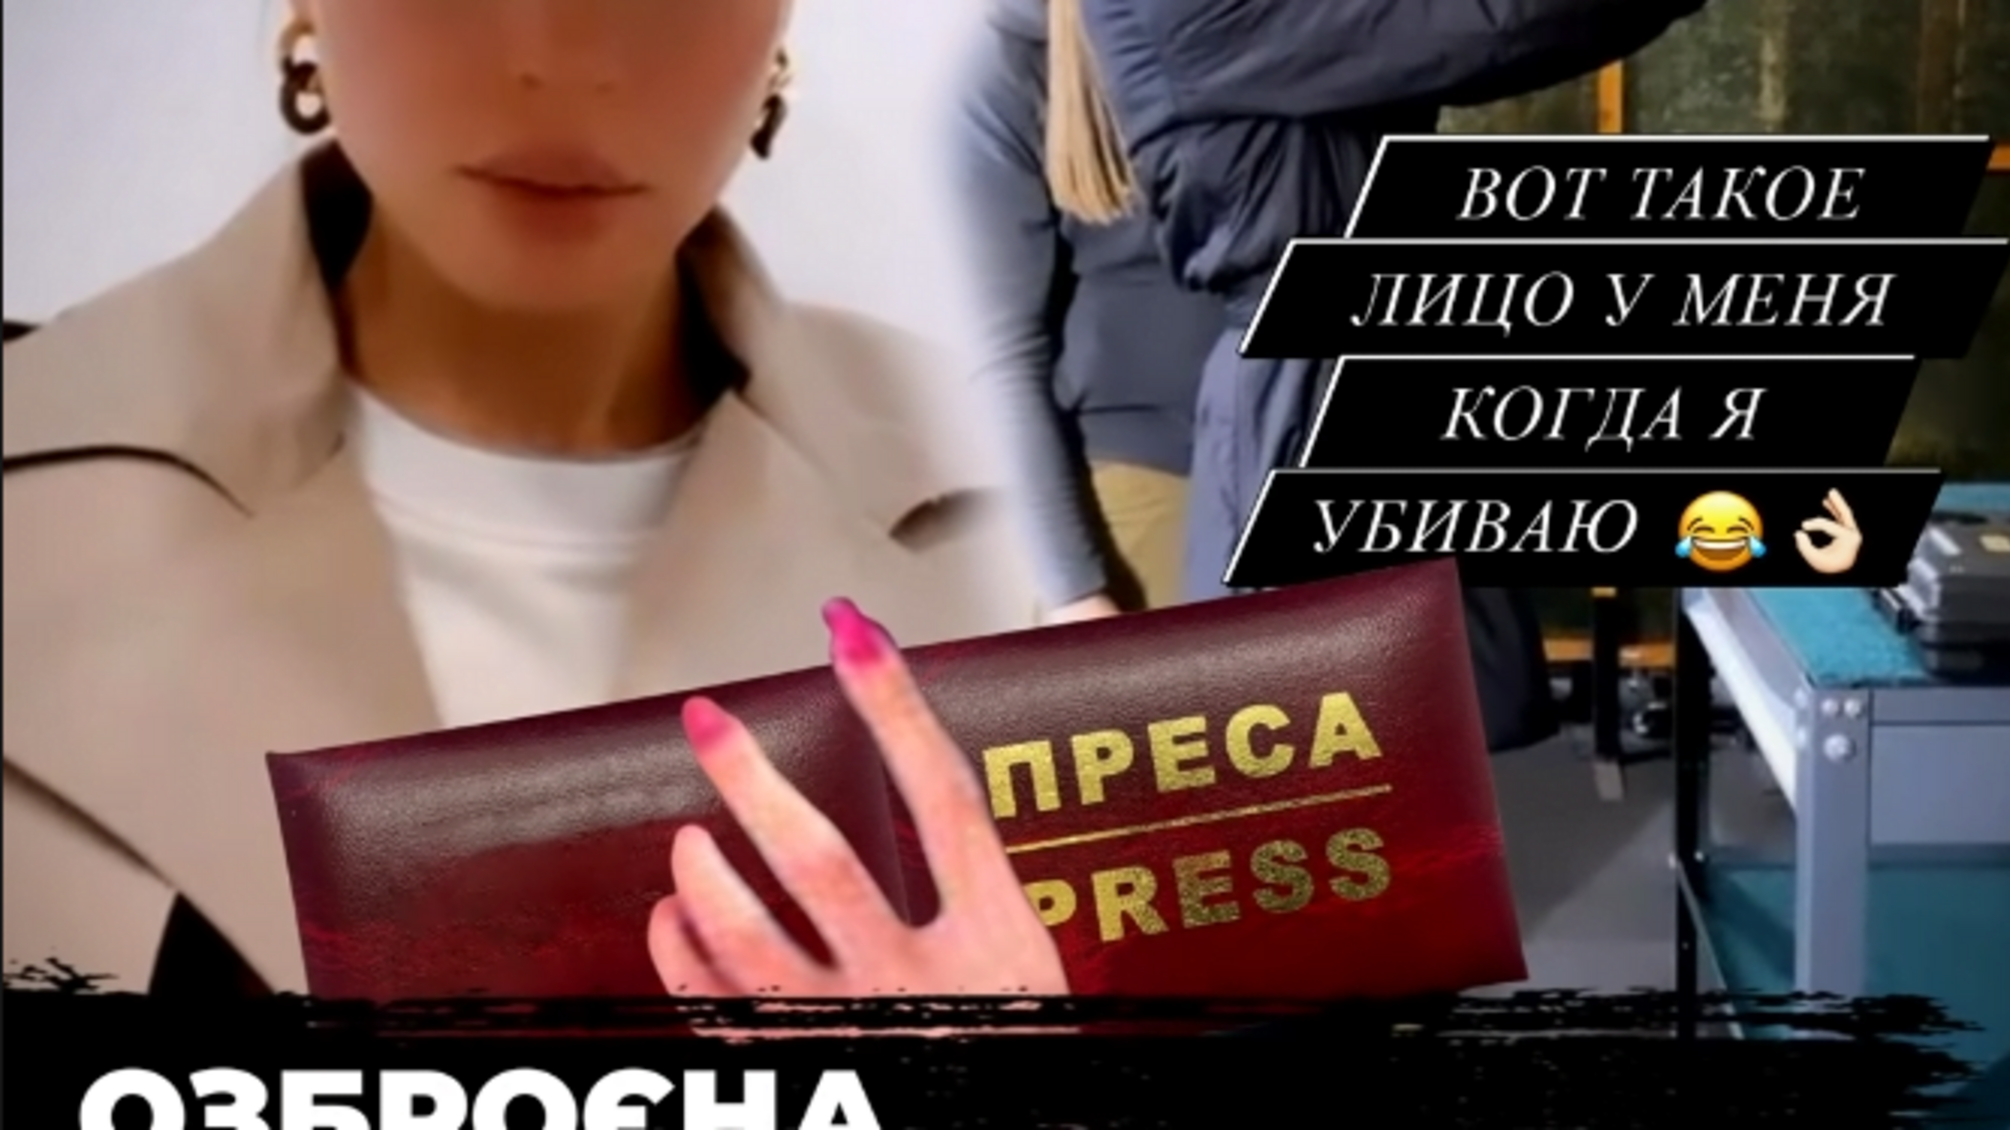 Статус журналіста як предмет торгів: мешканка Києва Ірина Топчій засвітилась у скандалі із фейковим посвідченням